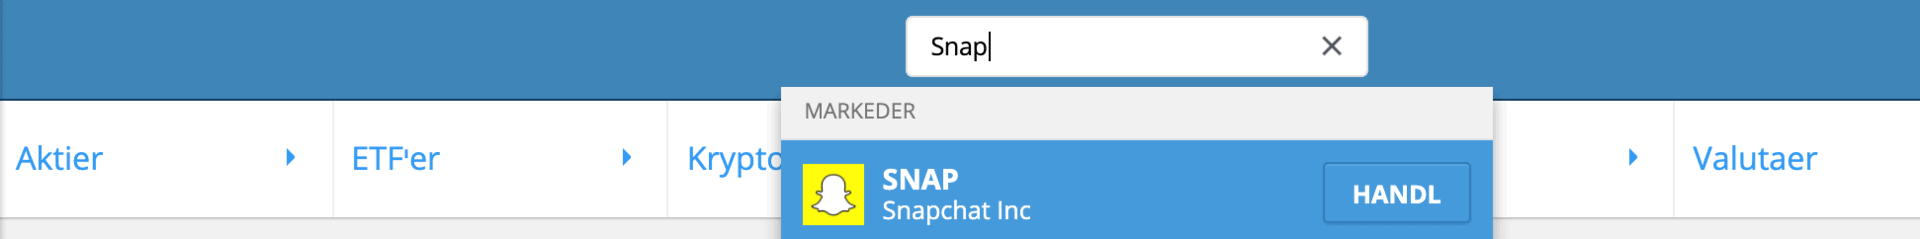 Soeg Snapchat